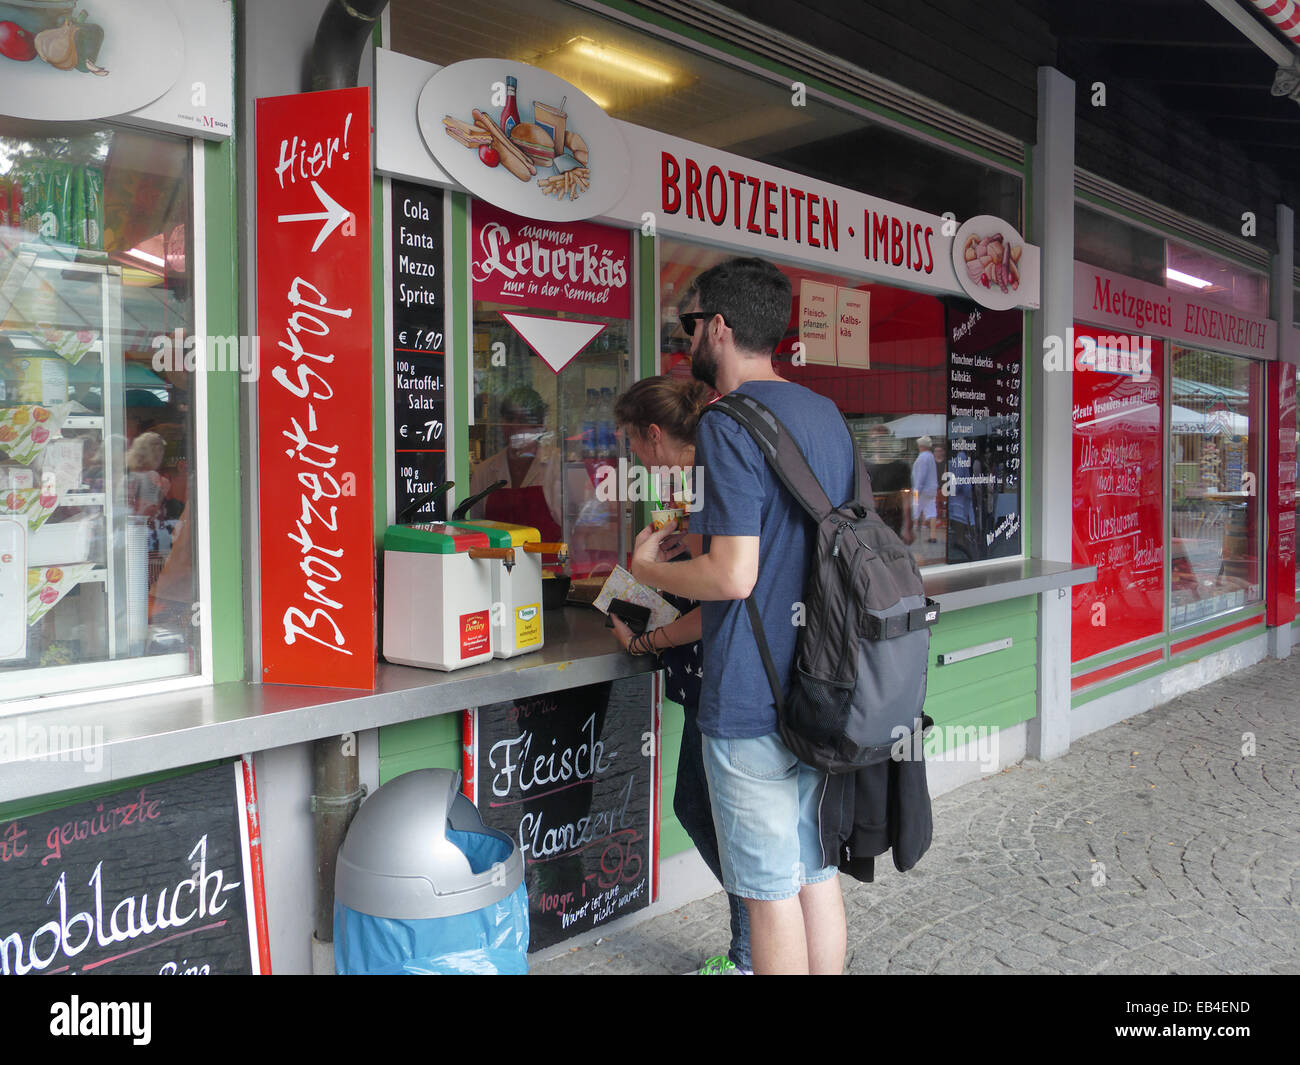 Brotzeit Sandwiches Time Fastfood Sausage Viktualienmarkt open air market Munich Germany Europe Stock Photo